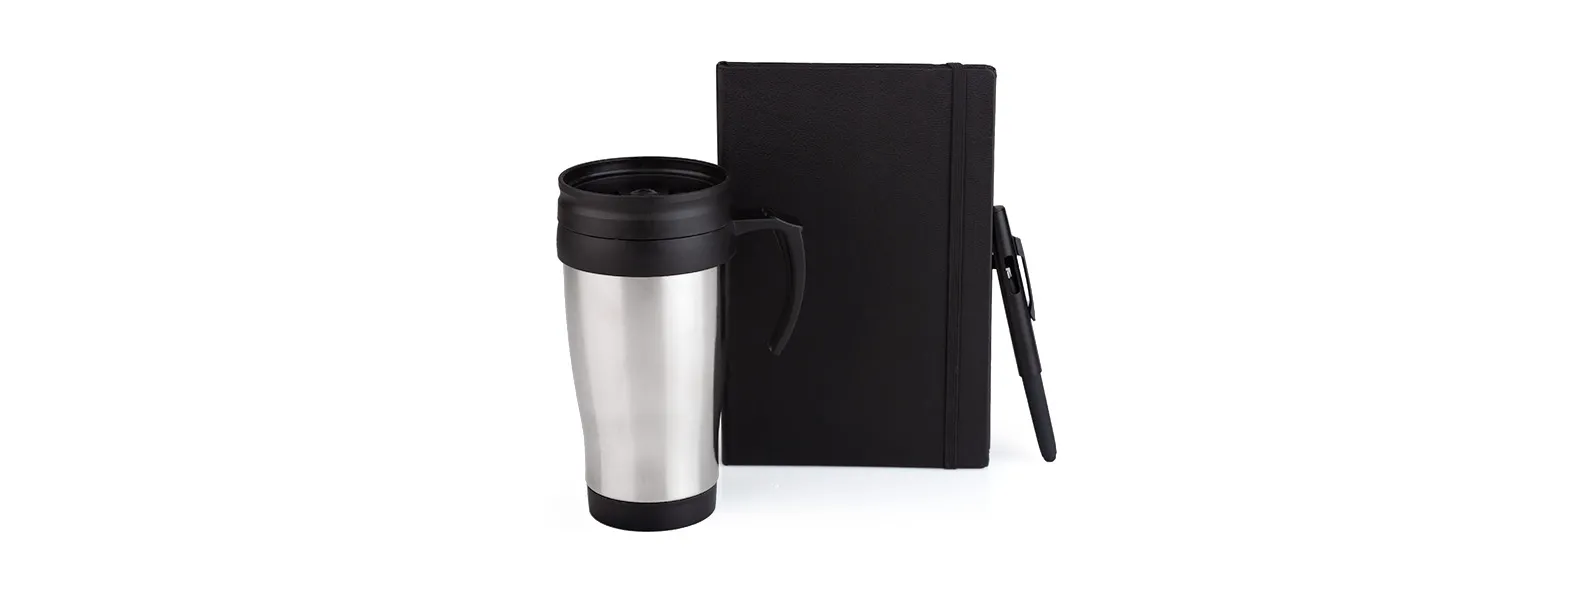 Kit composto por caneca em polipropileno preto revestida em aço inox escovado; caderno para anotações preto com capa dura e caneta esferográfica em ABS preta.